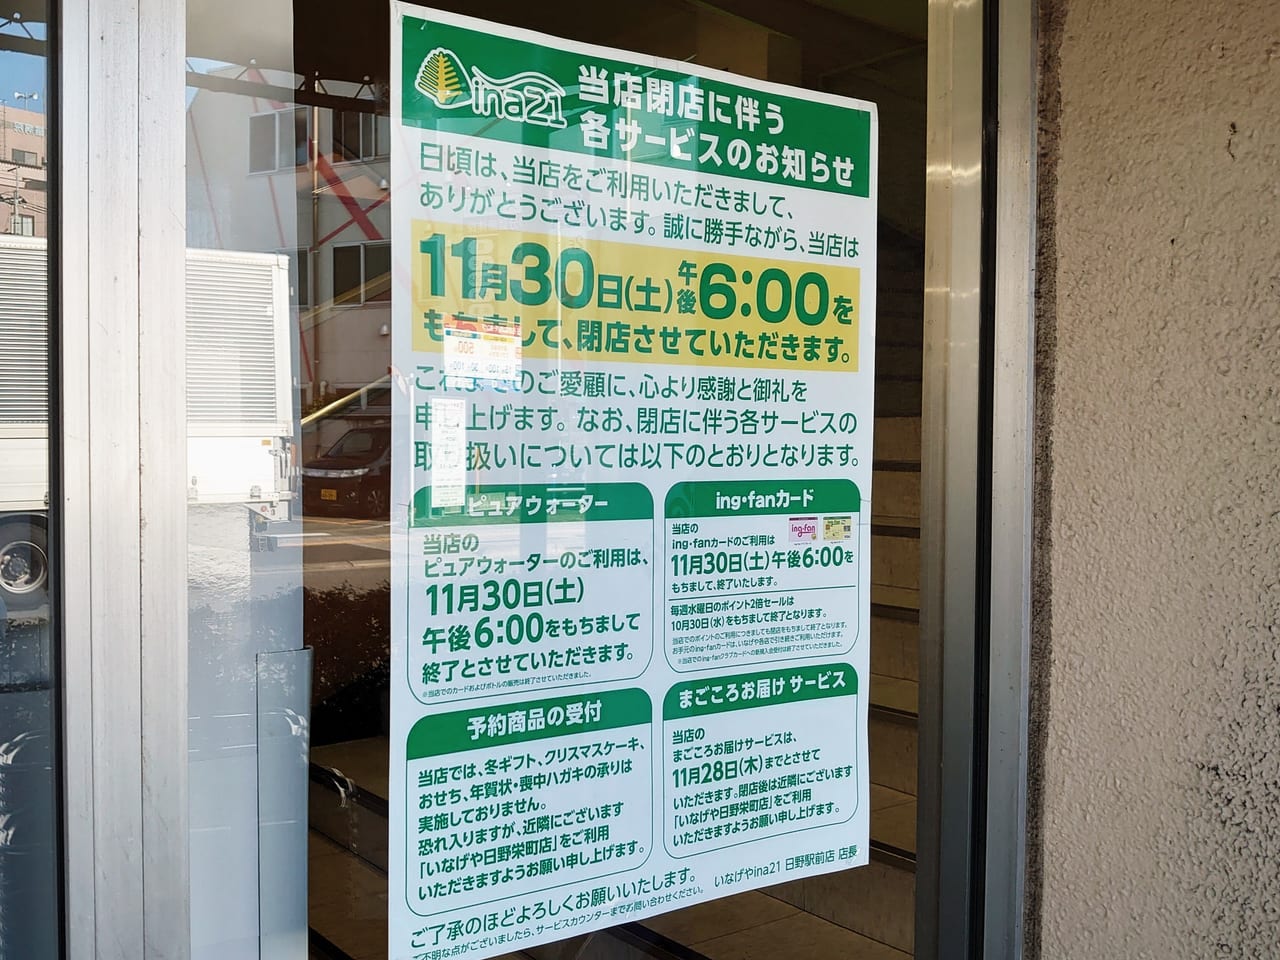 いなげやina21日野駅前店が2019年11月30日に閉店するお知らせ